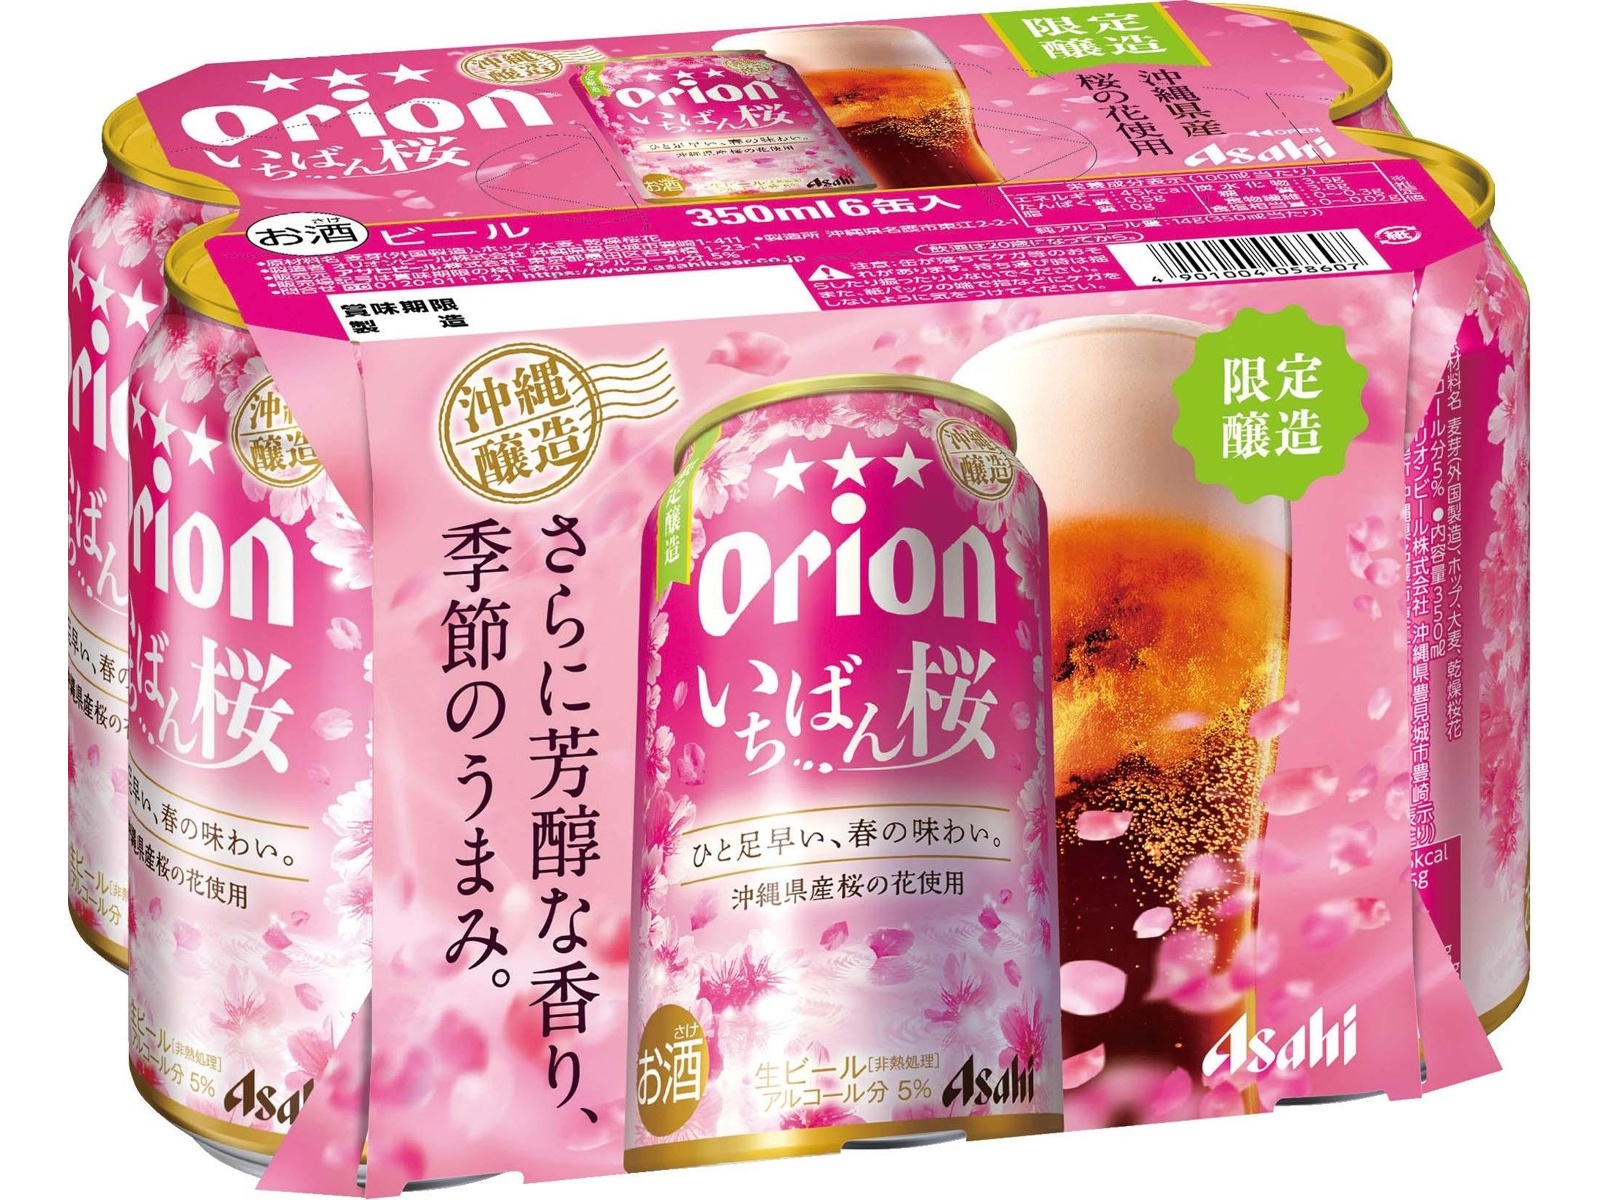 アサヒ オリオンいちばん桜 350ml×6缶組| コープこうべネット